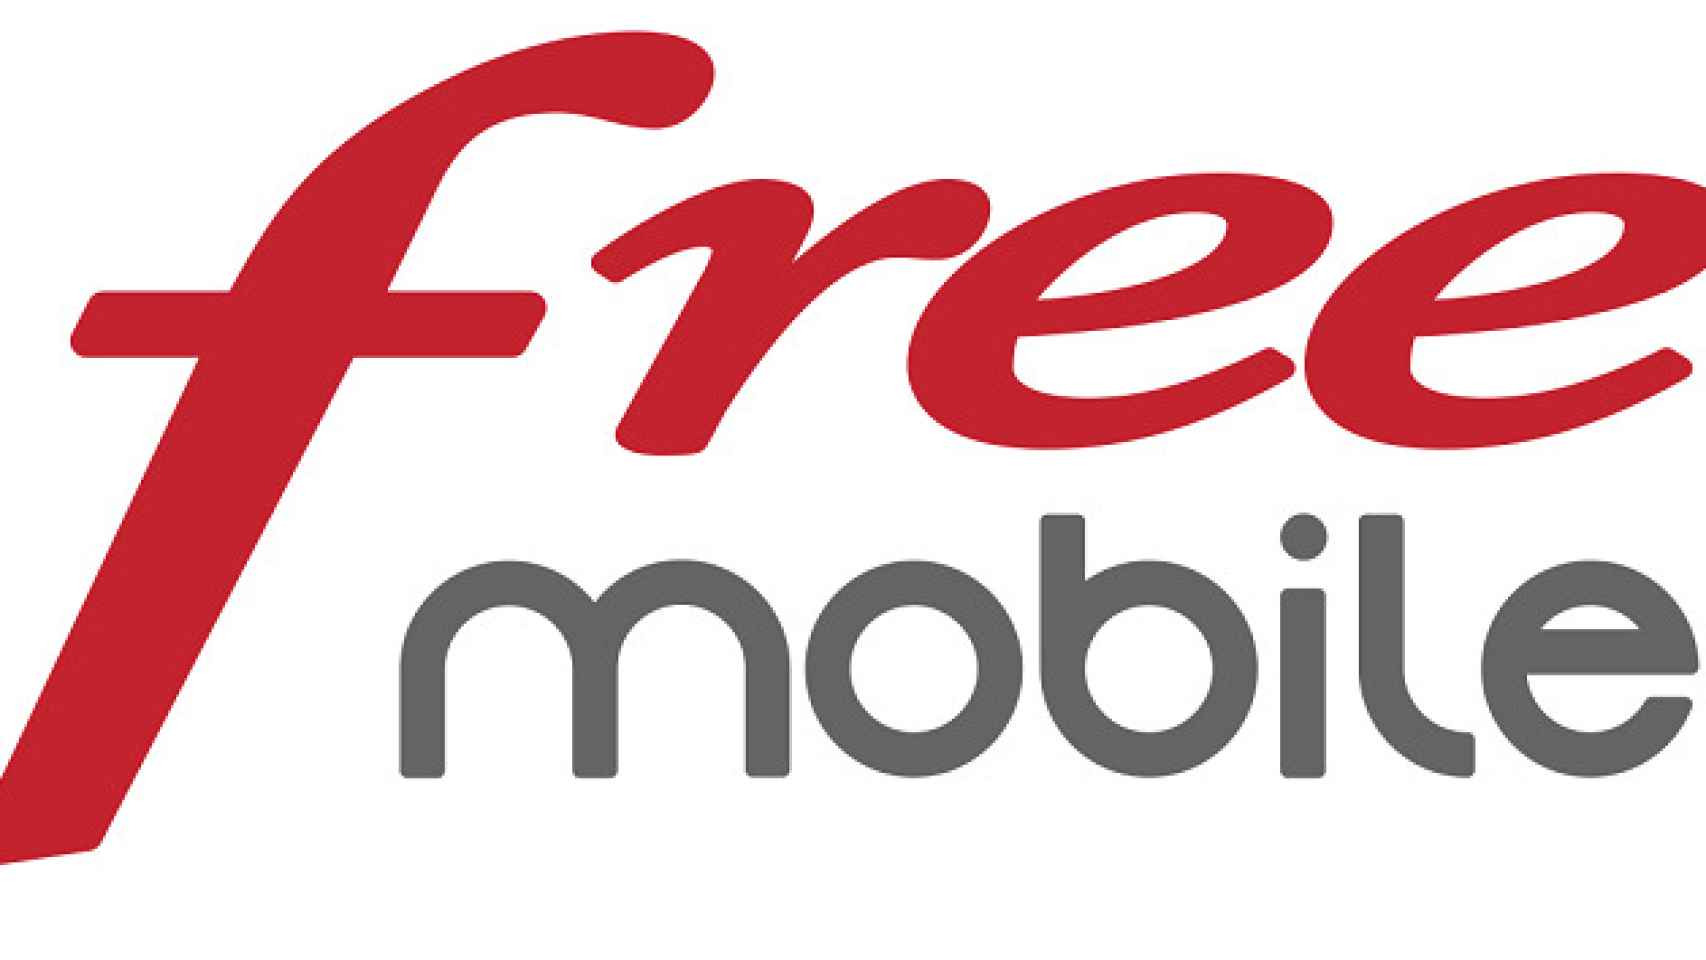 freemobile